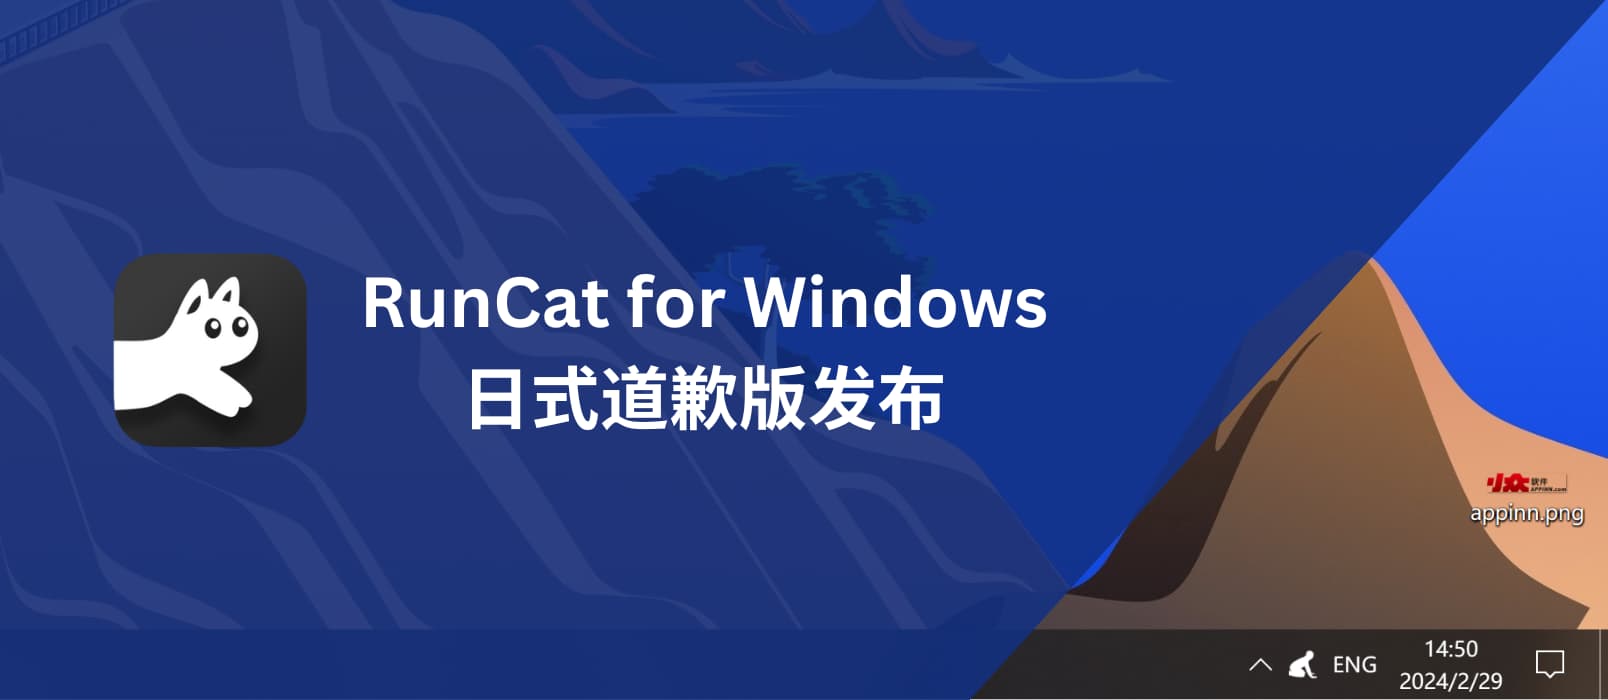 日式道歉版 RunCat for Windows 发布